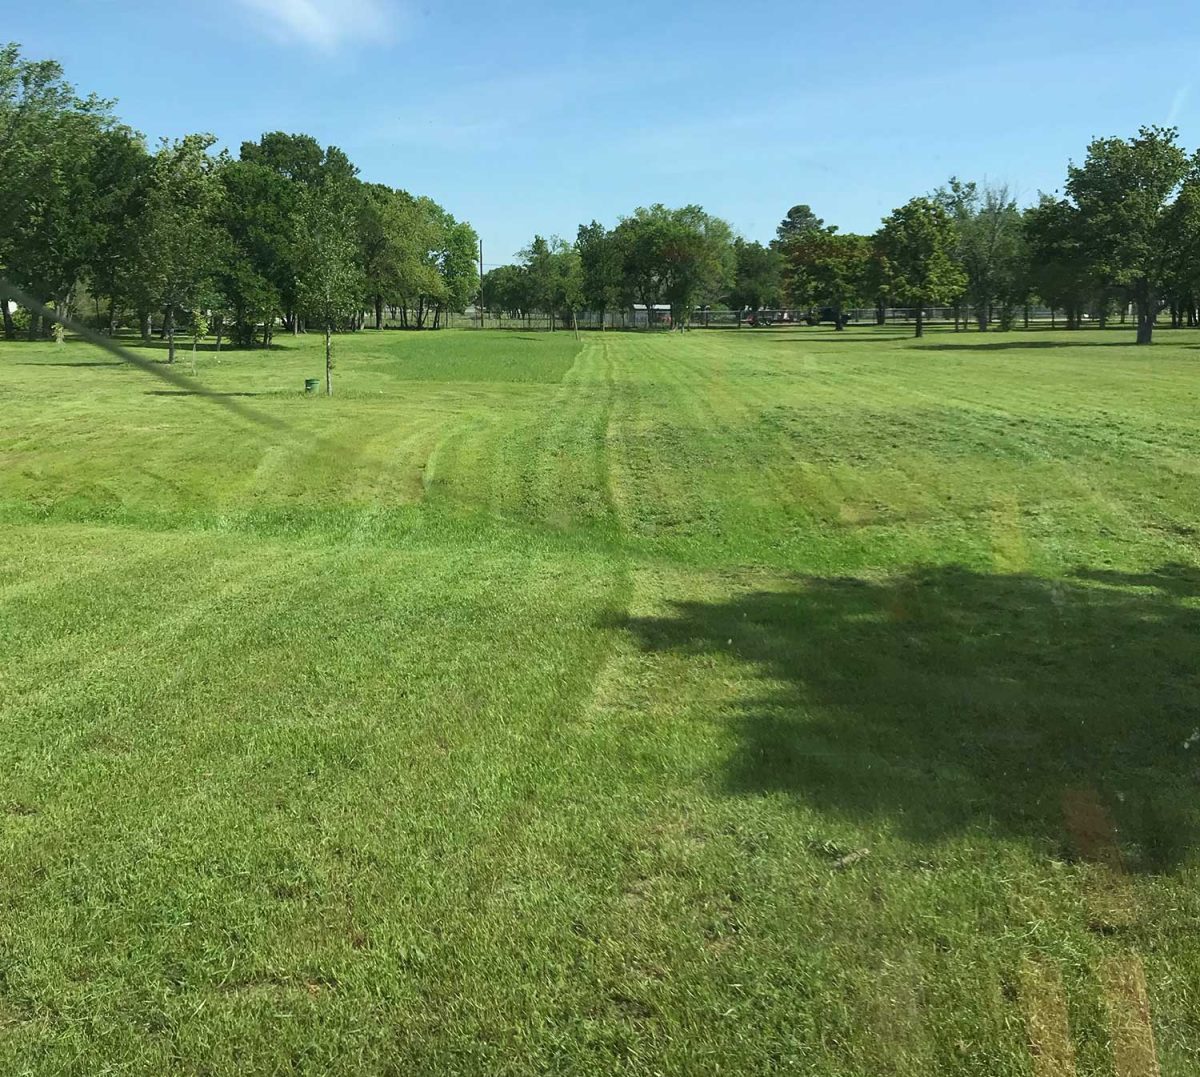 mowing baseball field grass